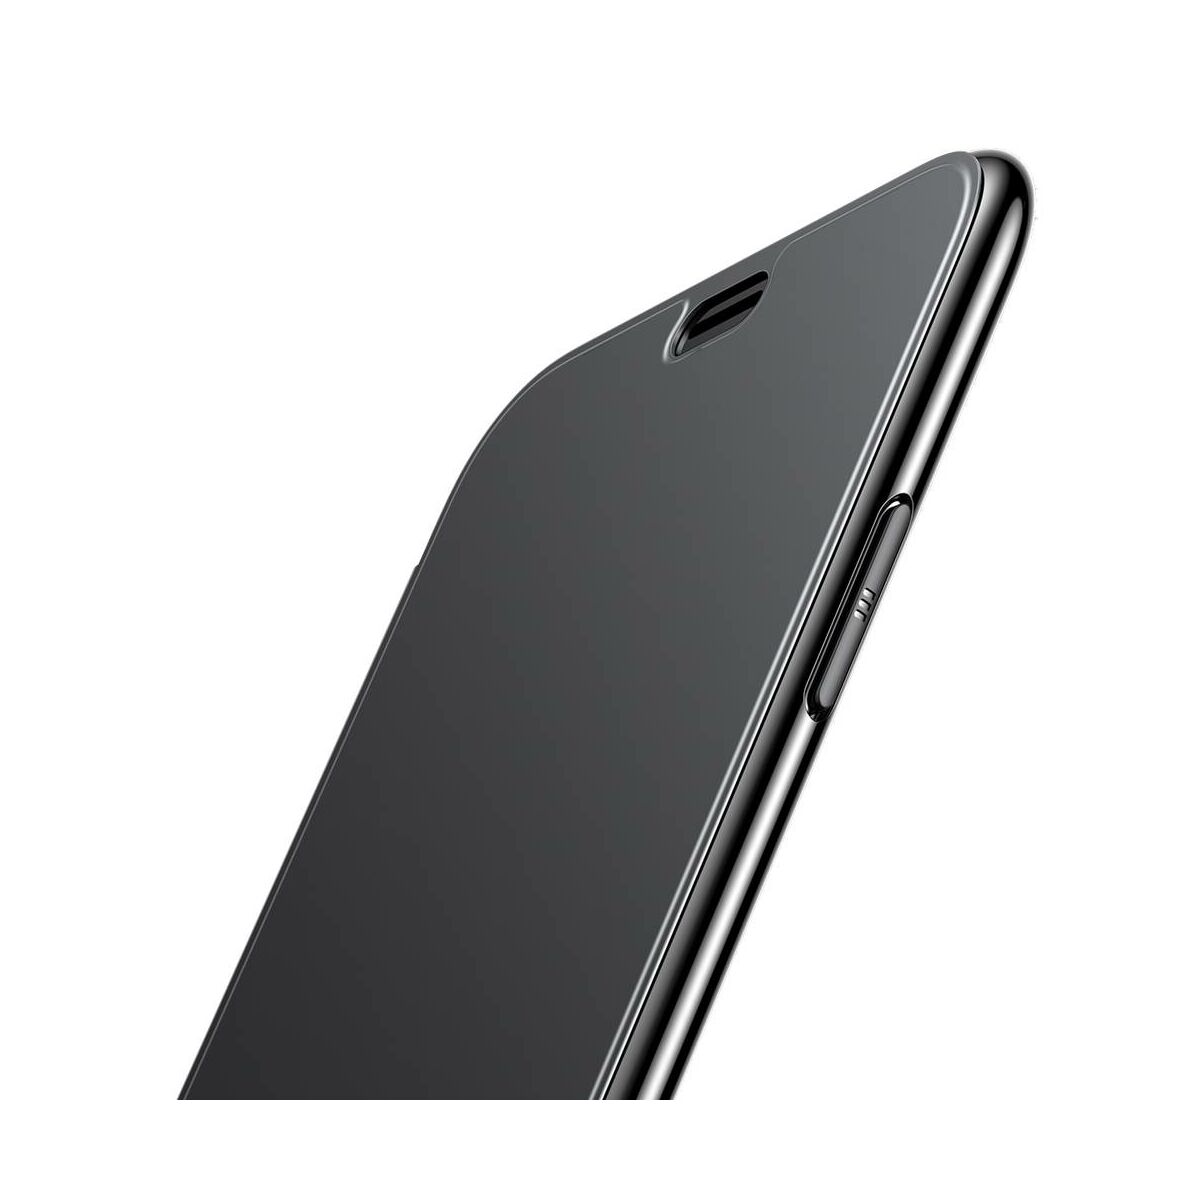 Kép 6/8 - Baseus iPhone XR tok,tok, Touchable kihajtható, érintőfelületű flip tok, fekete (WIAPIPH61-TS01)